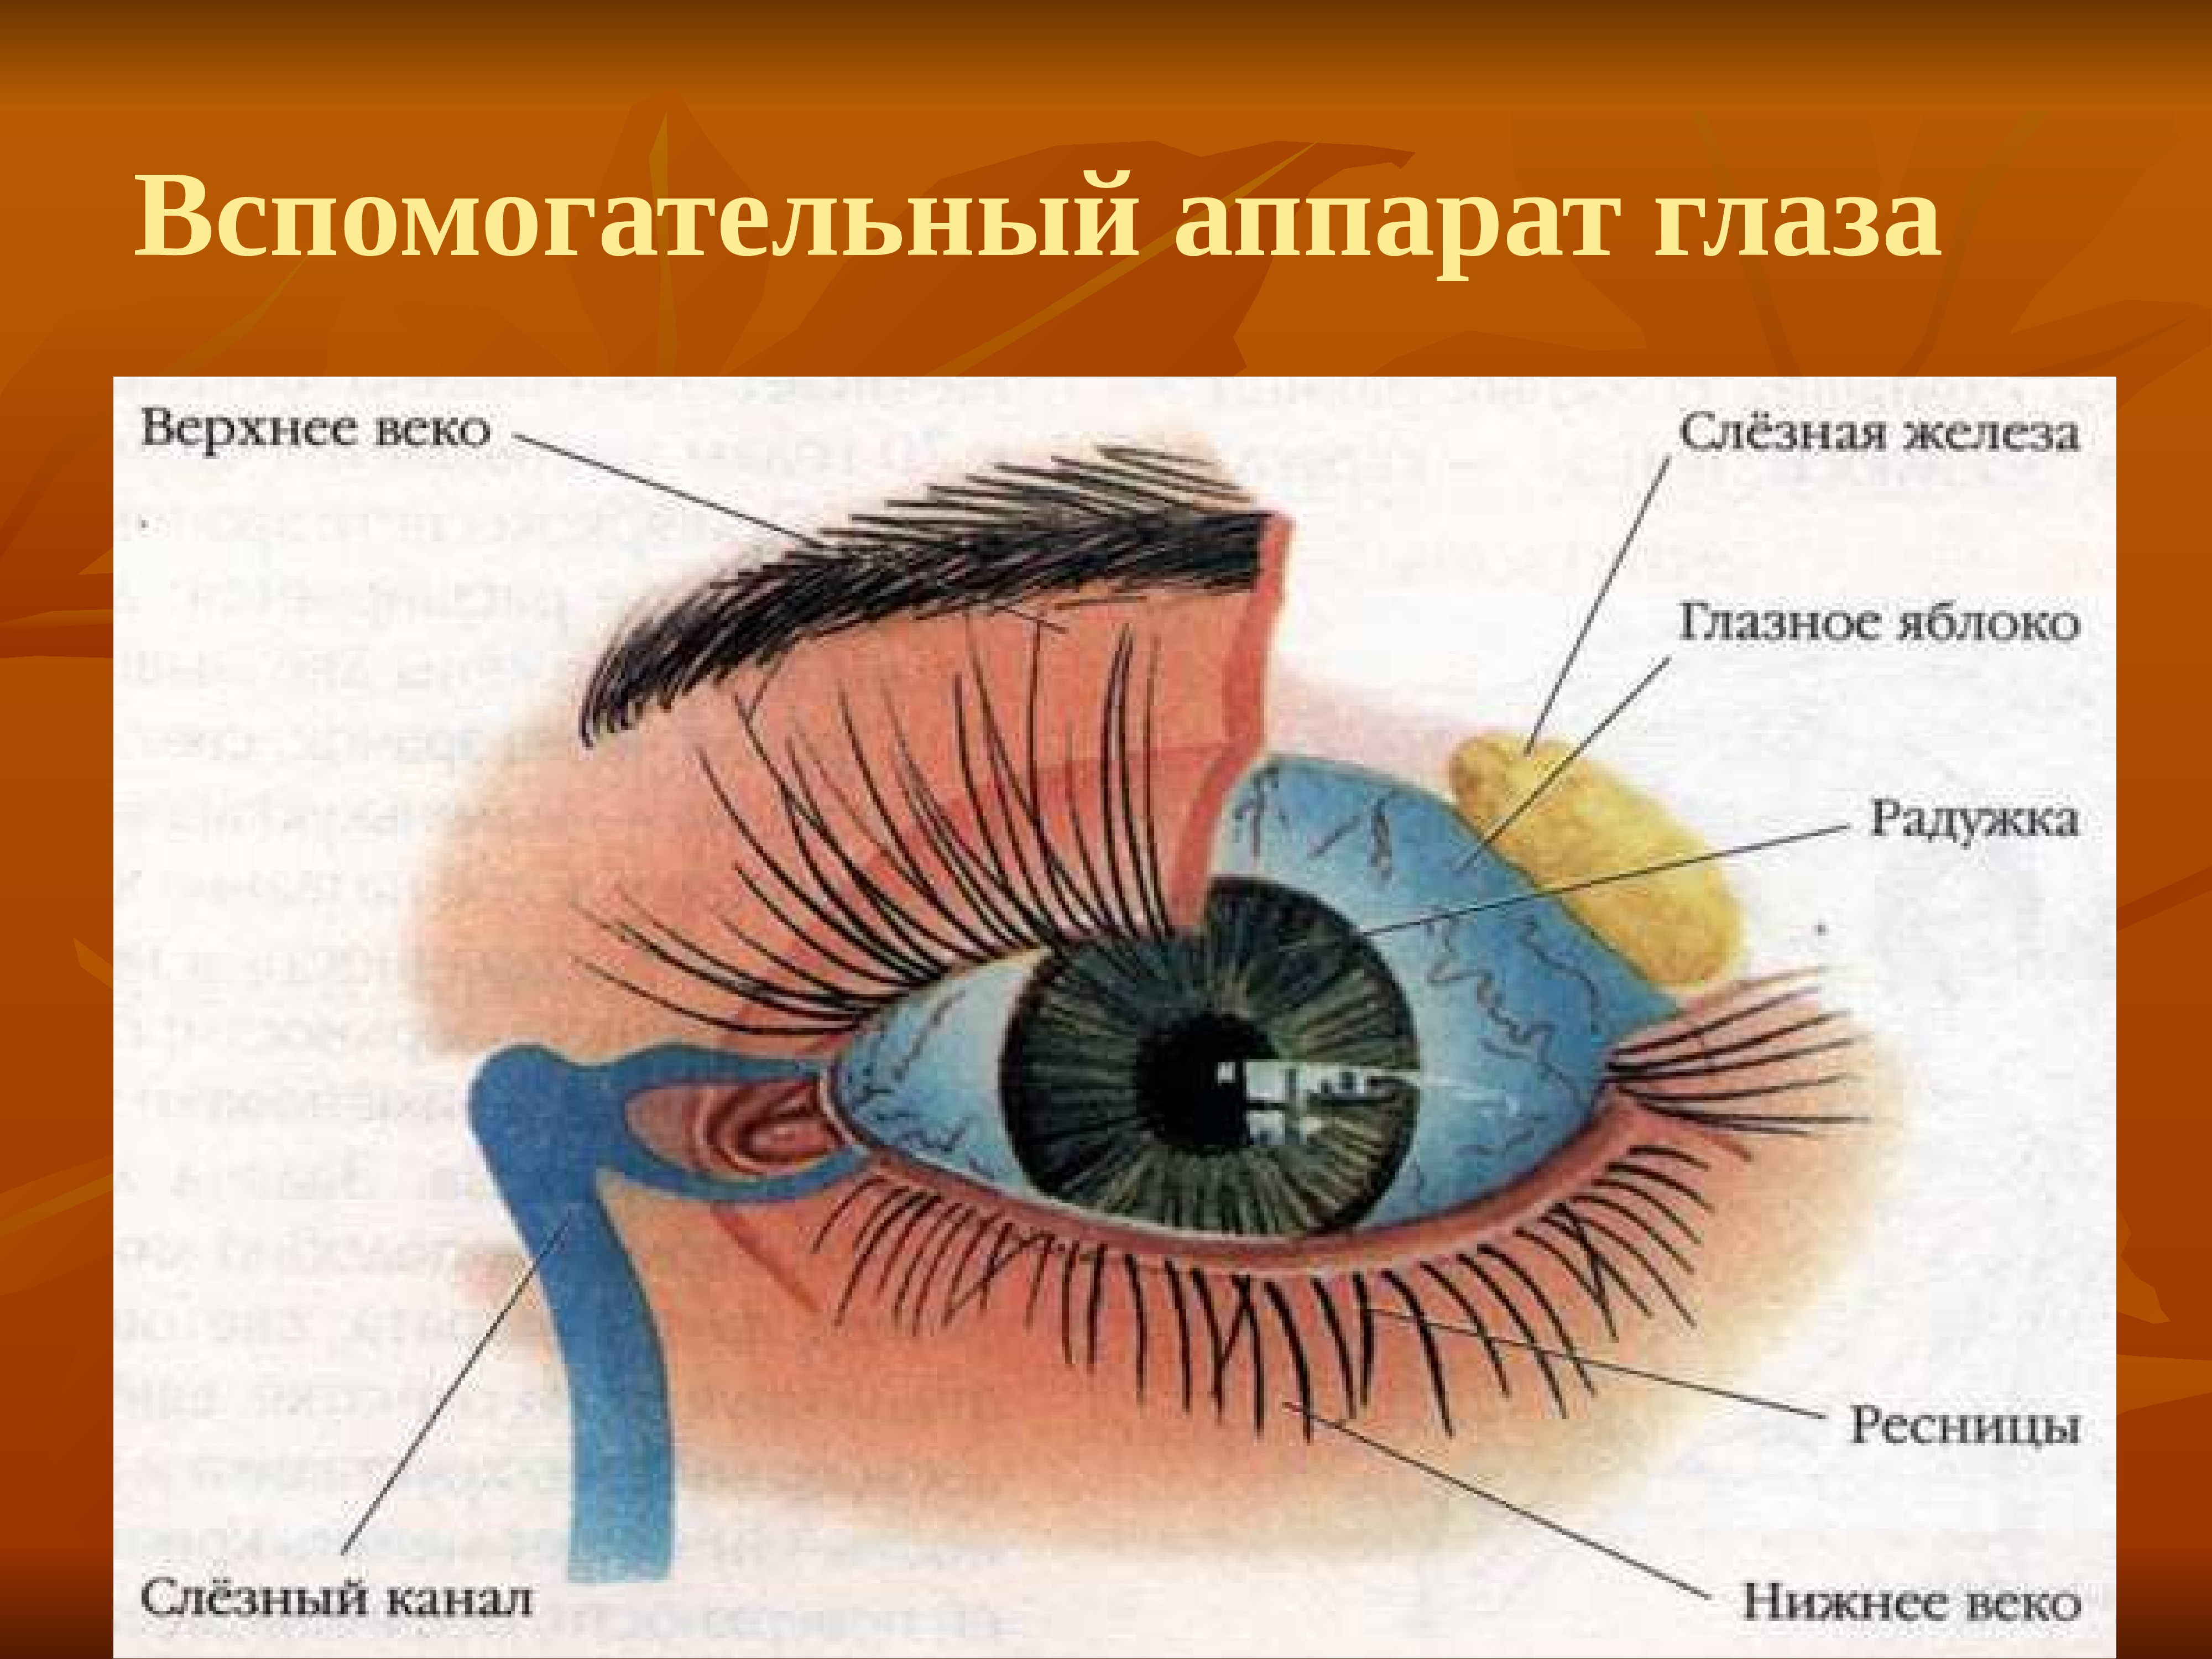 Строение глаза с обозначениями. Вспомогательный аппарат глазного яблока анатомия. Анатомические структуры глаза. Внешнее строение глаза вспомогательные органы. Строение глаза человека внутри.